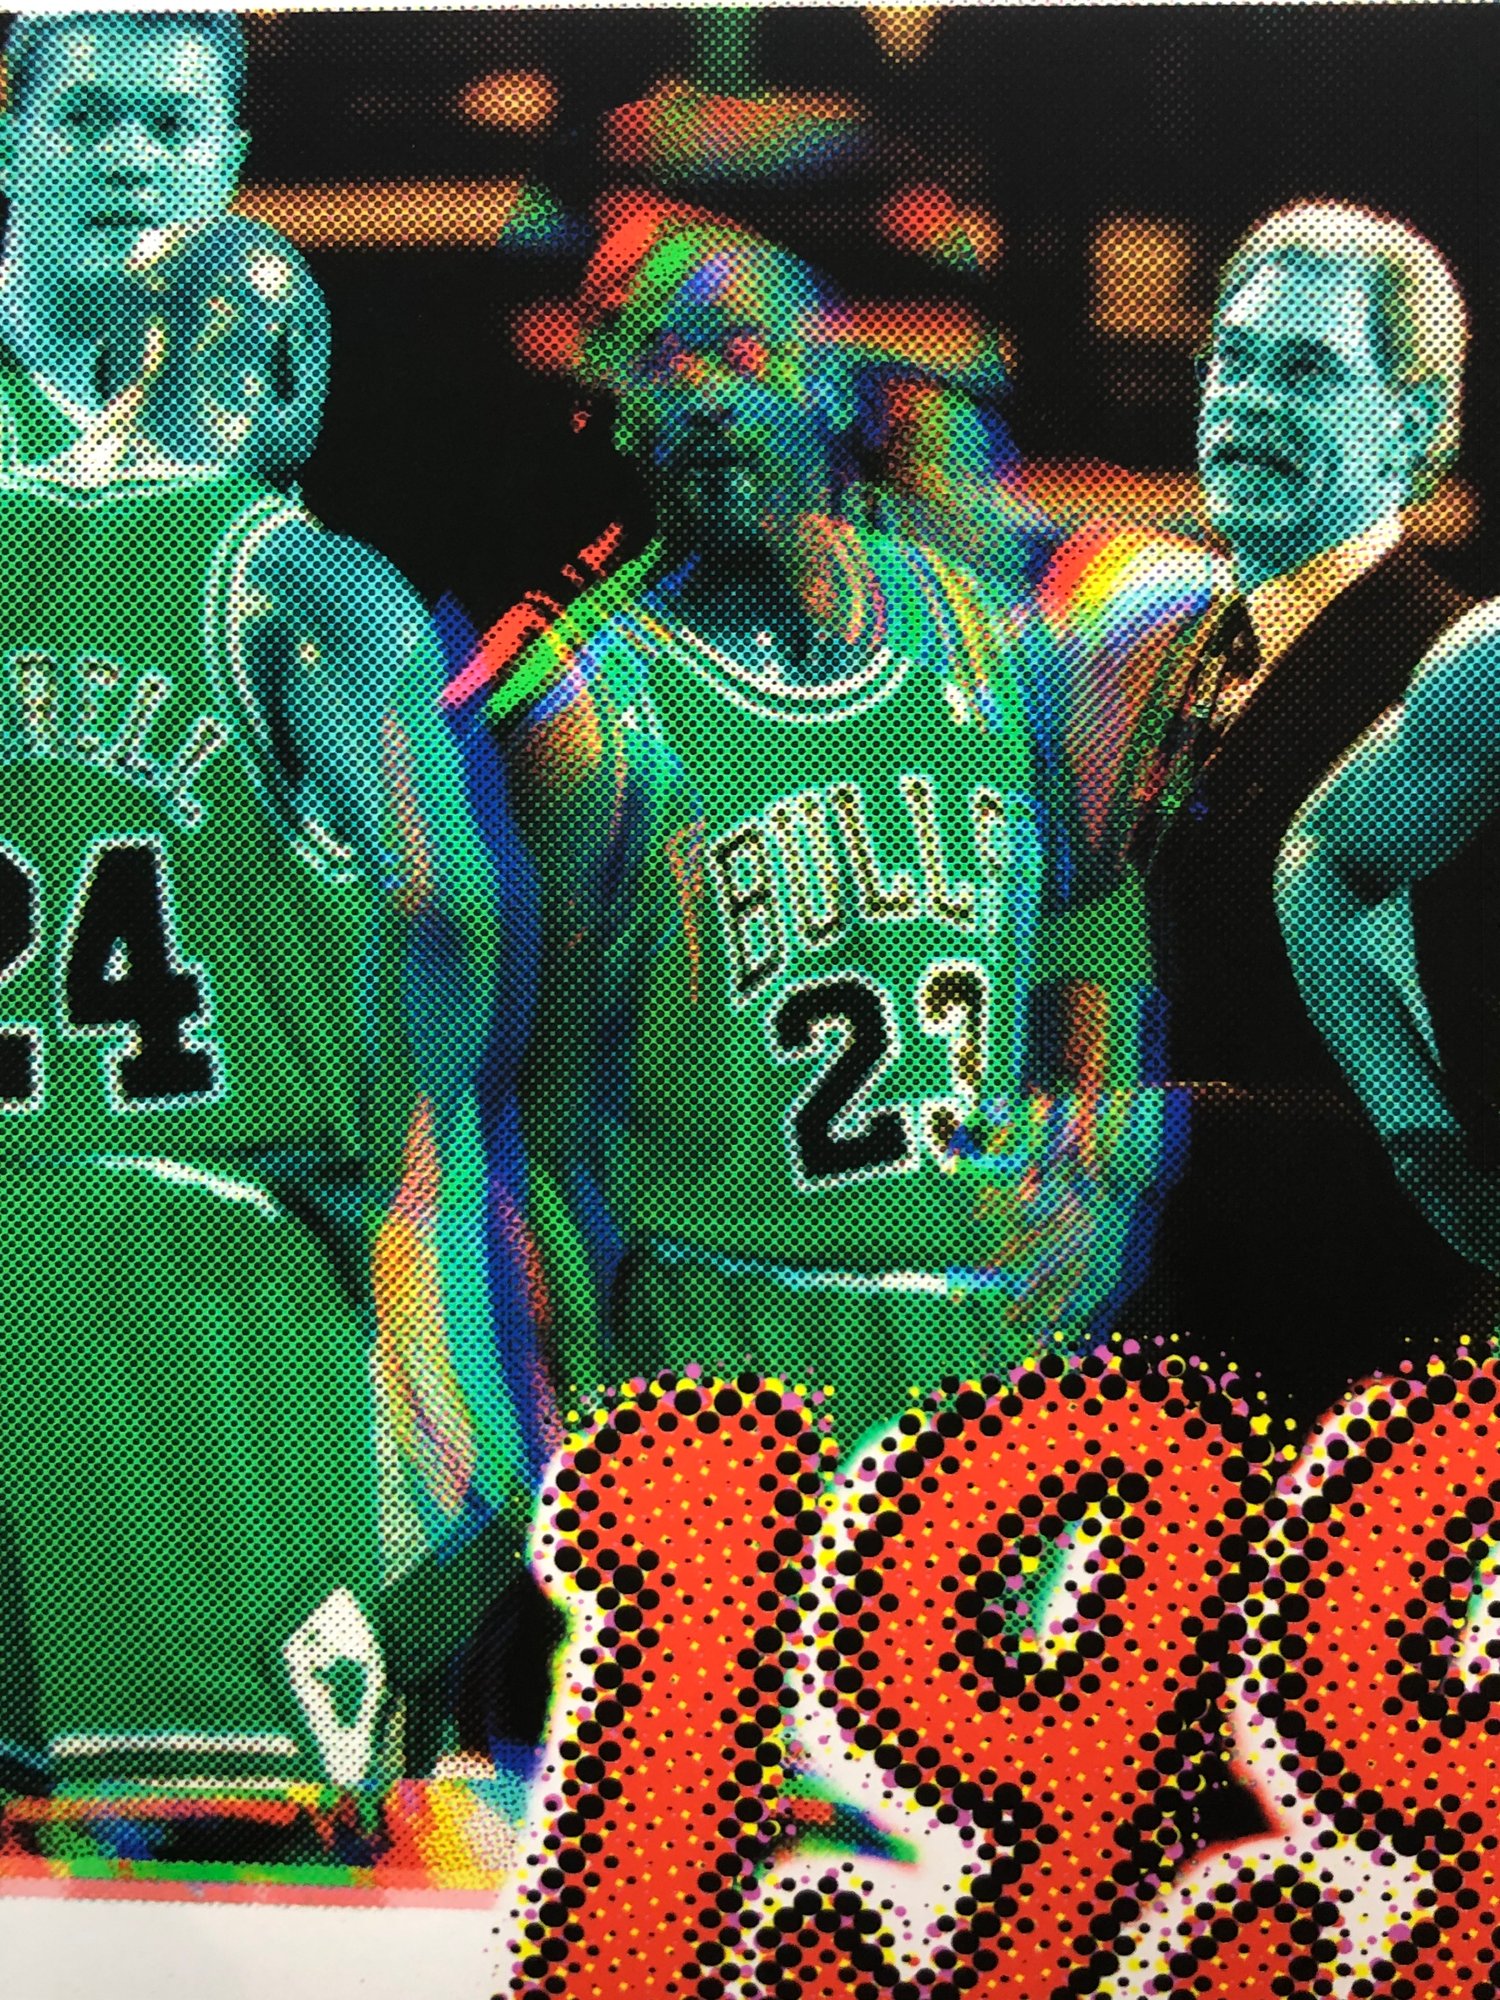 Image of " Bulls de 1998 " Print d'art limité à 12 copies.